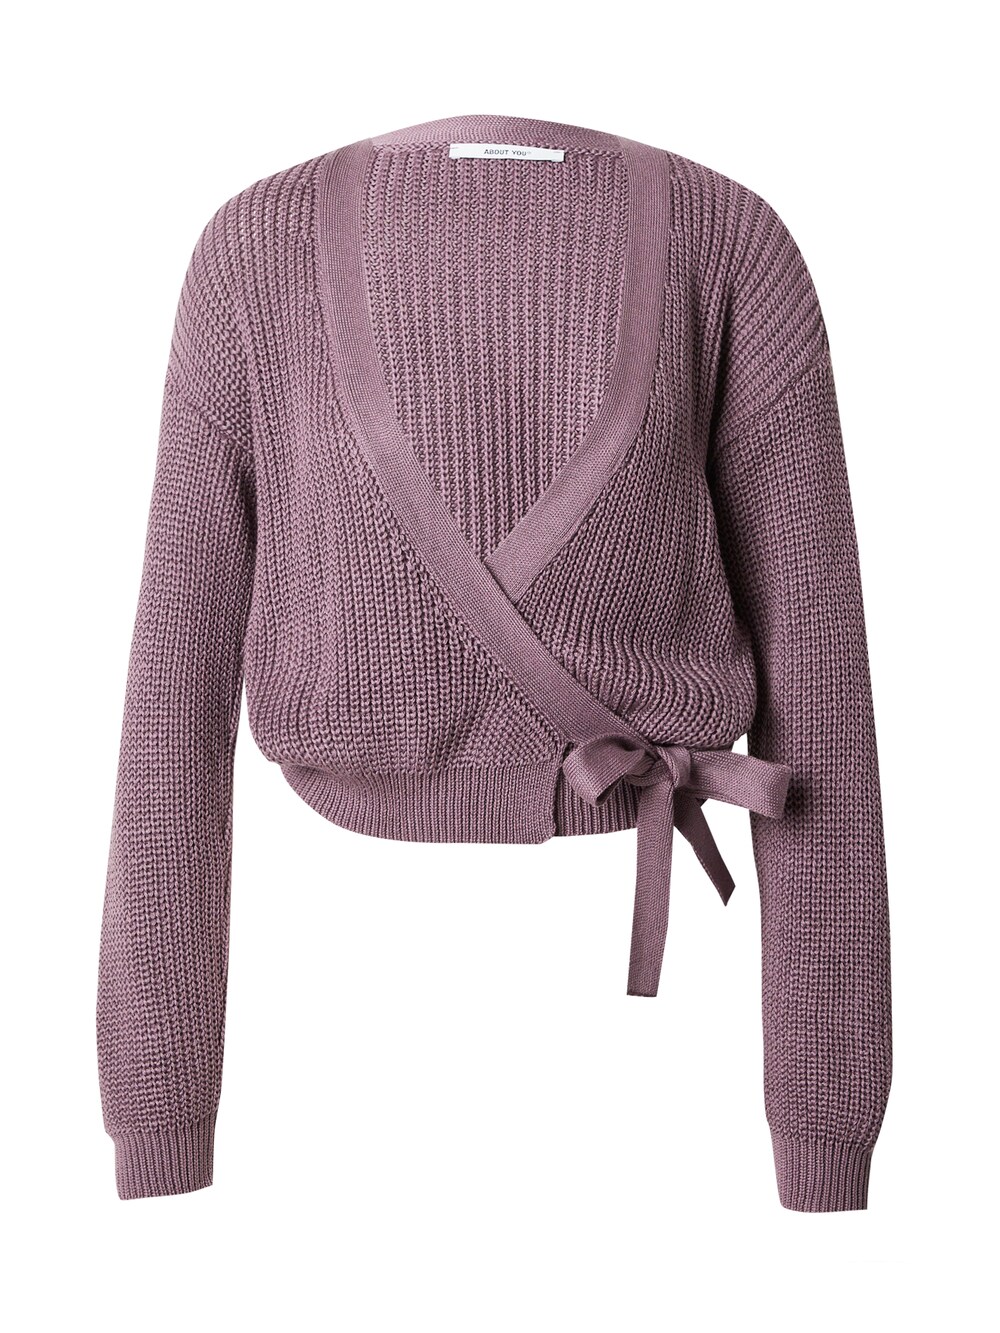 Свитер ABOUT YOU Selina, фиолетовый свитер about you светло фиолетовый розовый